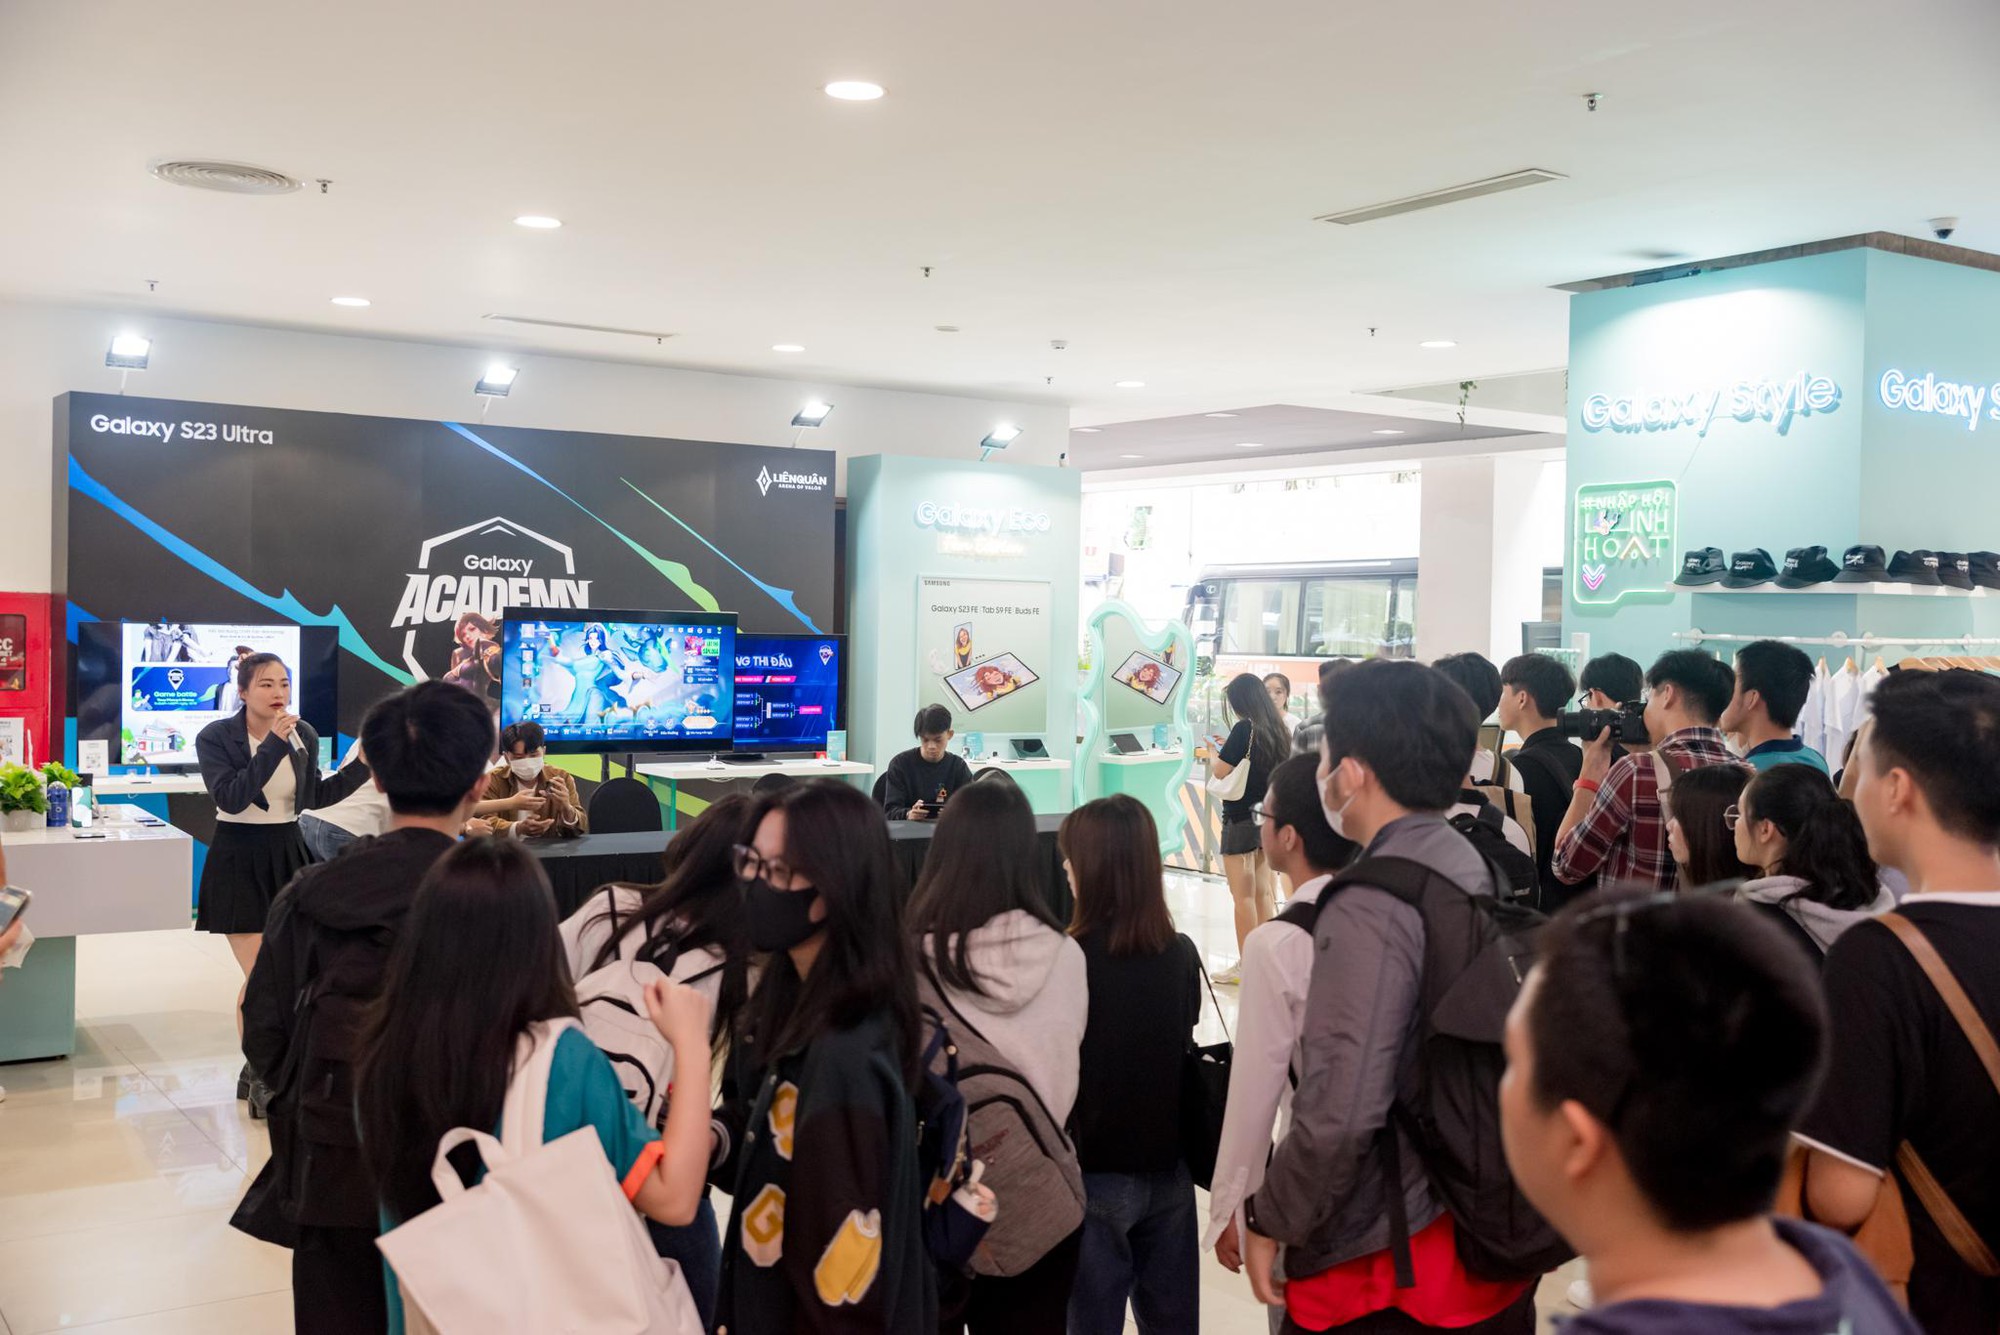 Tiếp tục đón lượng sinh viên khổng lồ, Samsung Galaxy Campus chứng tỏ sức hút “không thể chối từ” - Ảnh 4.